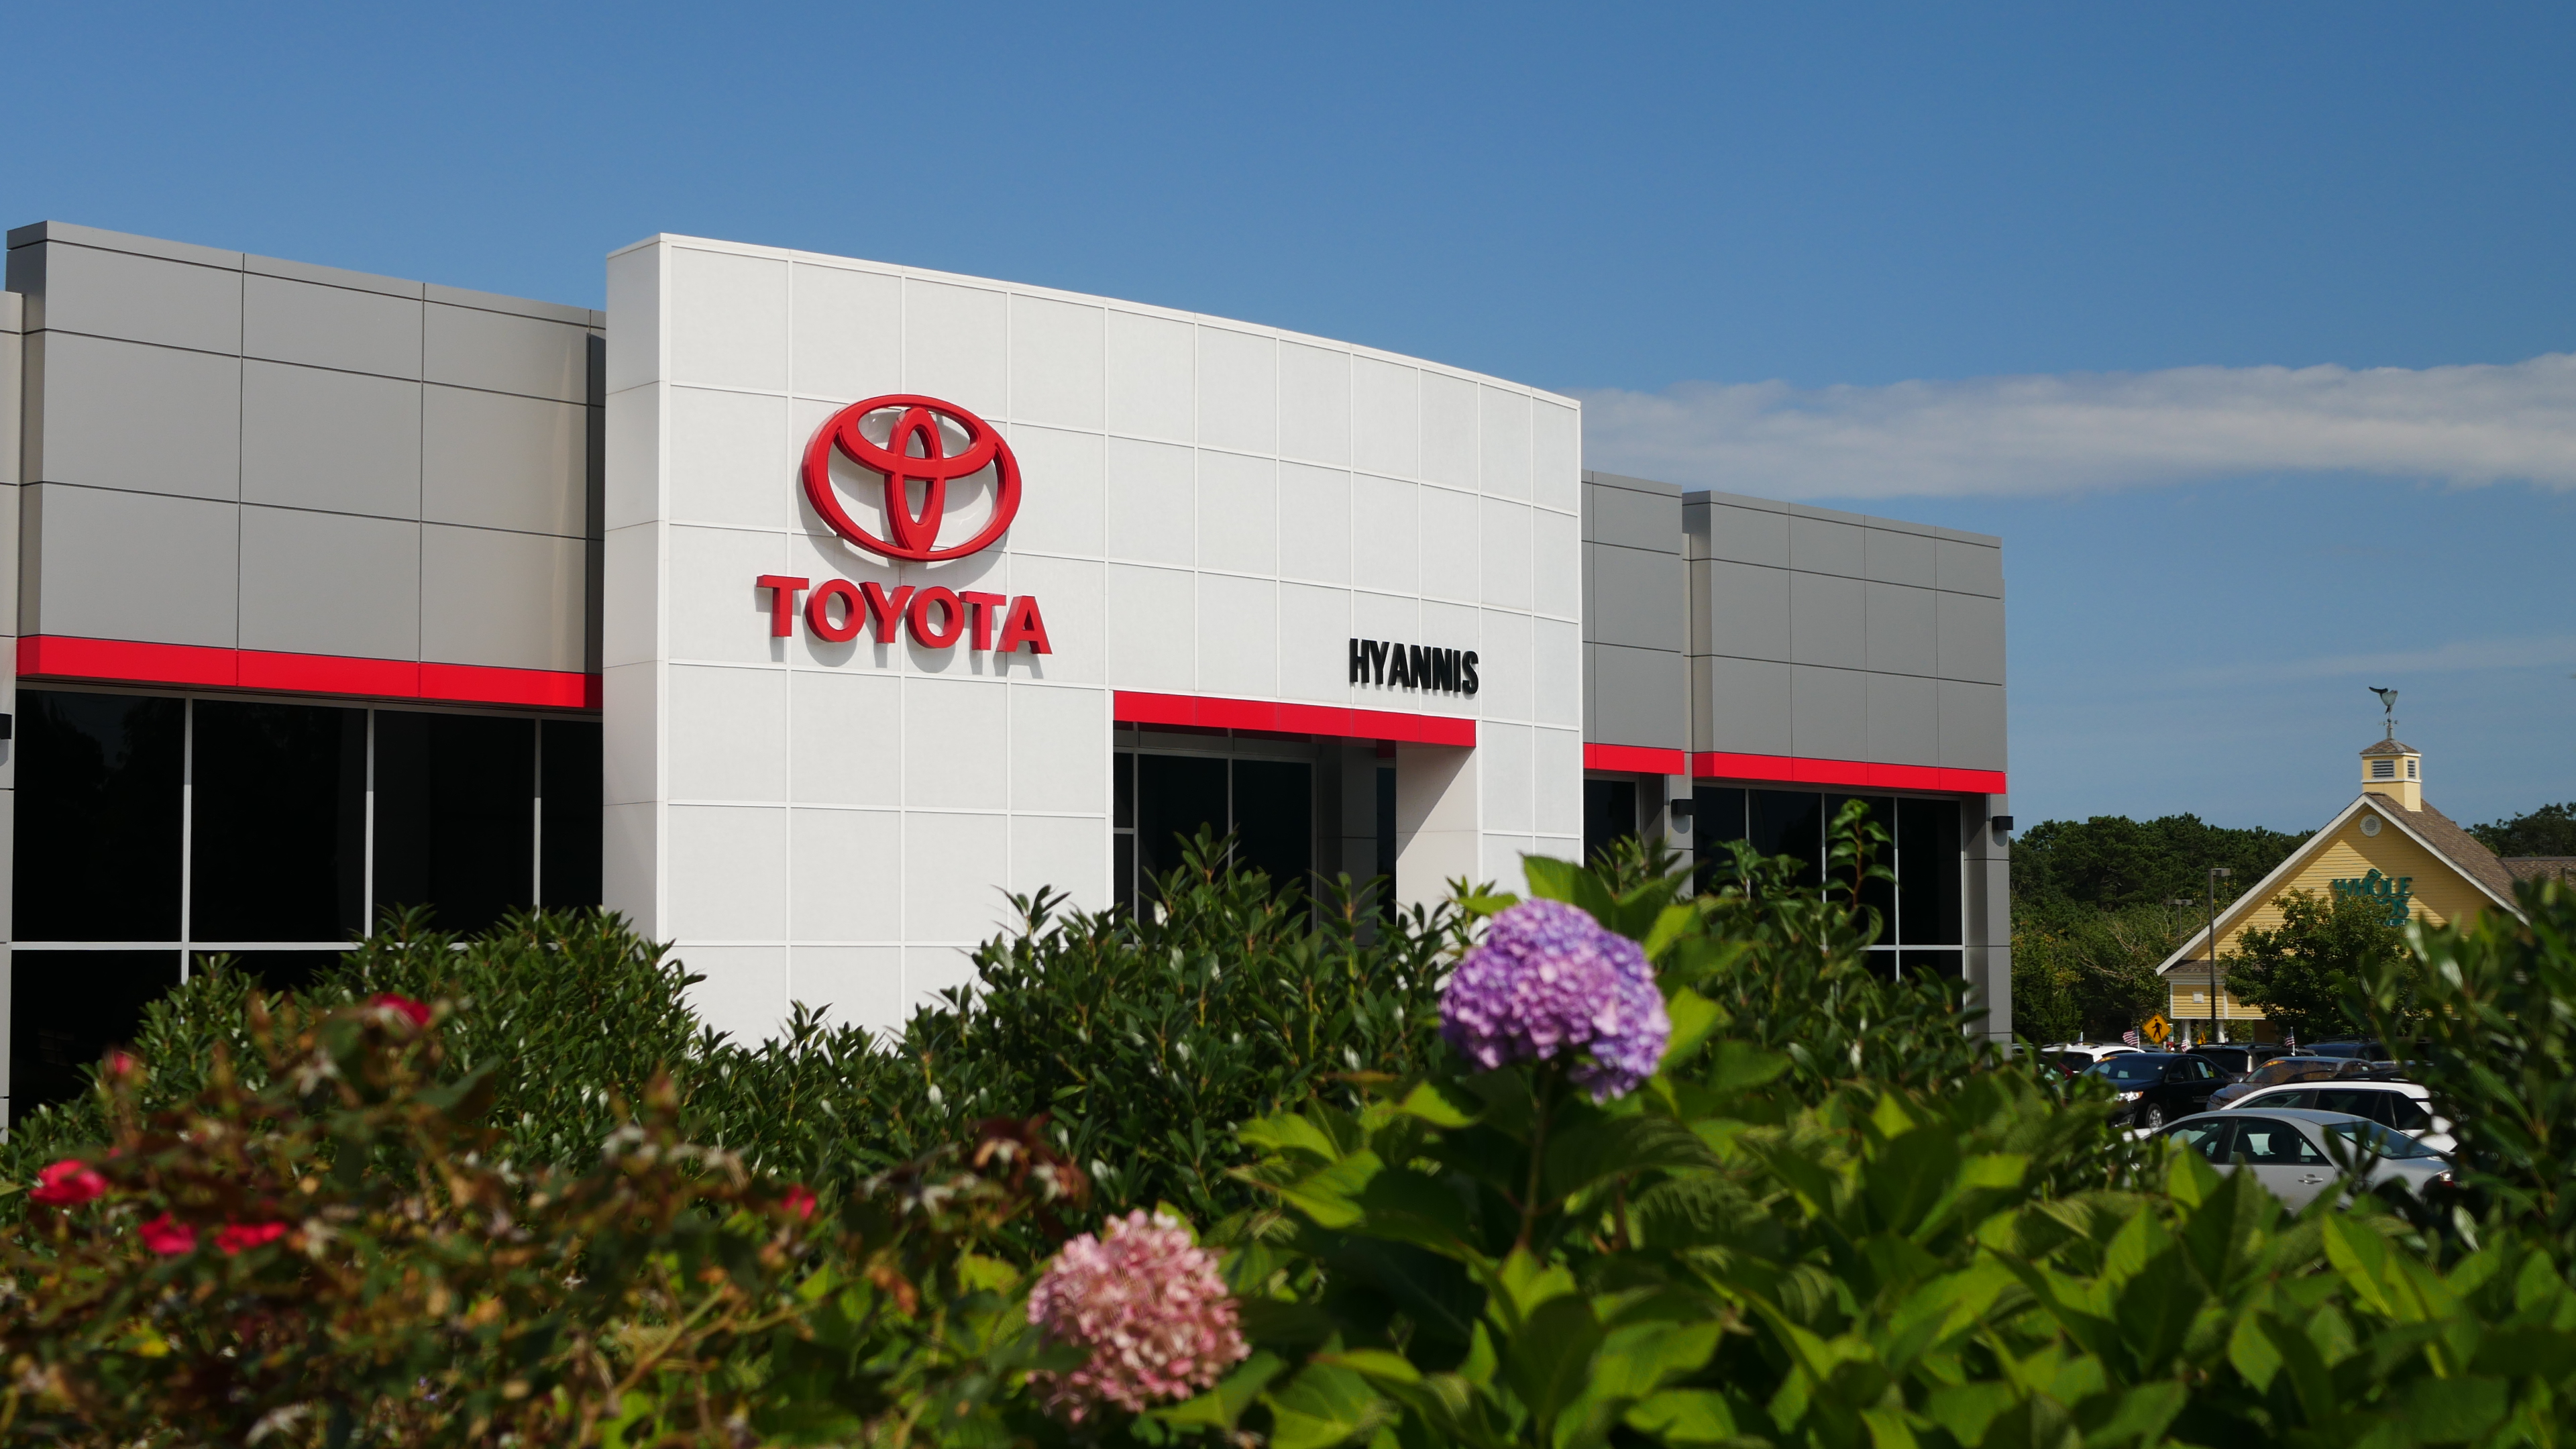 Hyannis Toyota Photo